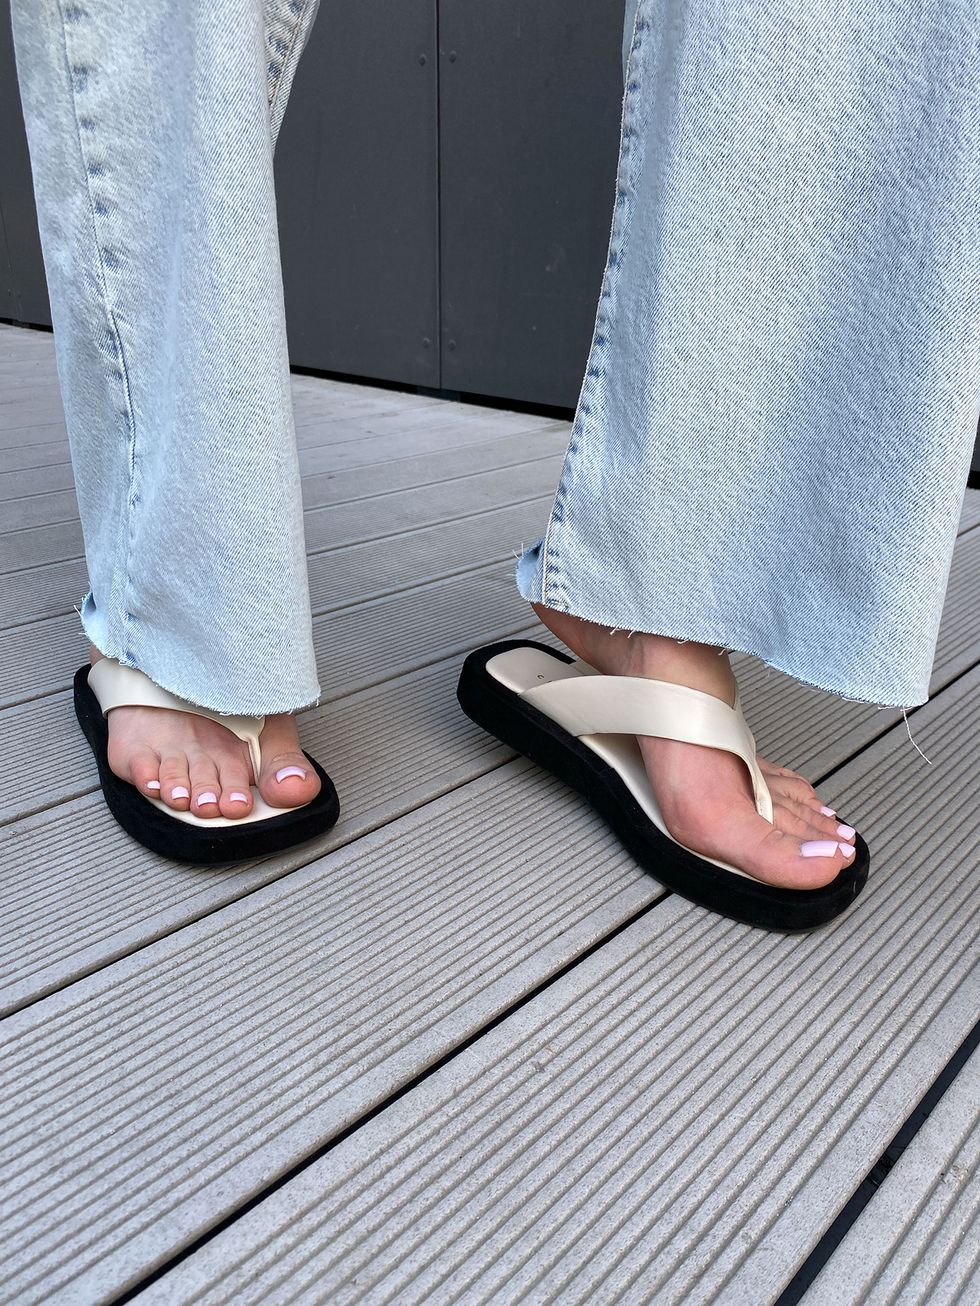 la scarpa ultra light dell'estate 2021 la trovi trai i sandali comodi estivi a infradito da scegliere in versione infradito con zeppa o sandali con tacco medio